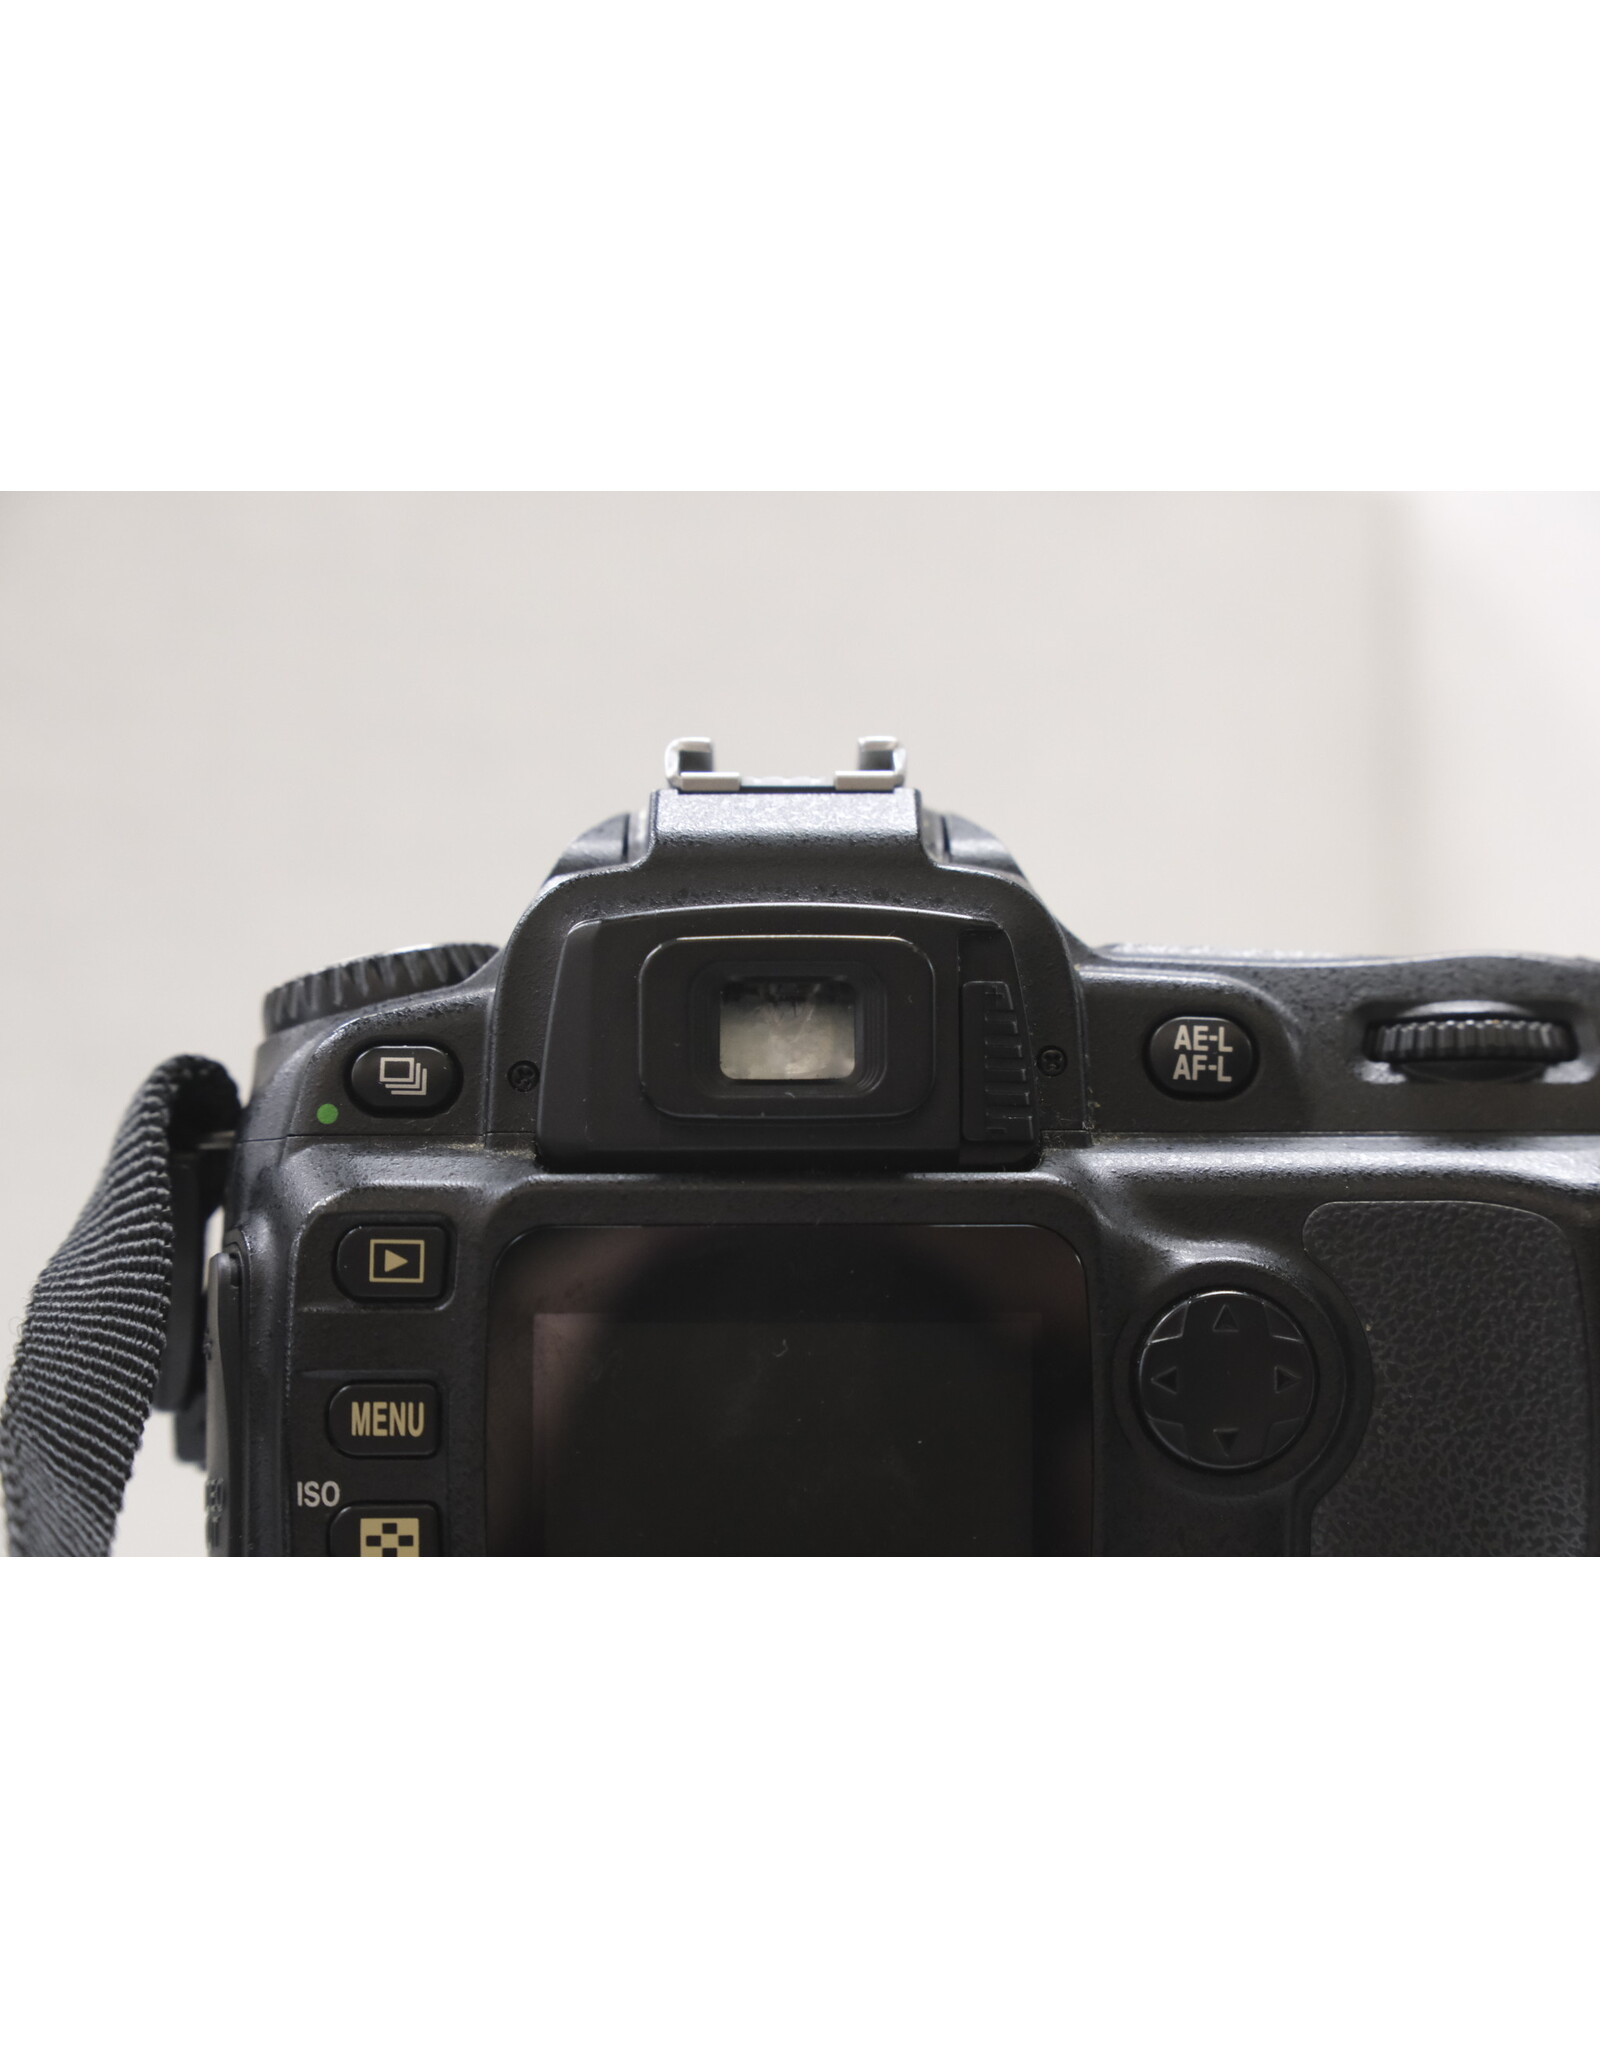 Nikon Nikon D50 6.1MP DSLR Camera - w/ 28-80mm f3.3-5.6 G AF Lens (Pre-owned)